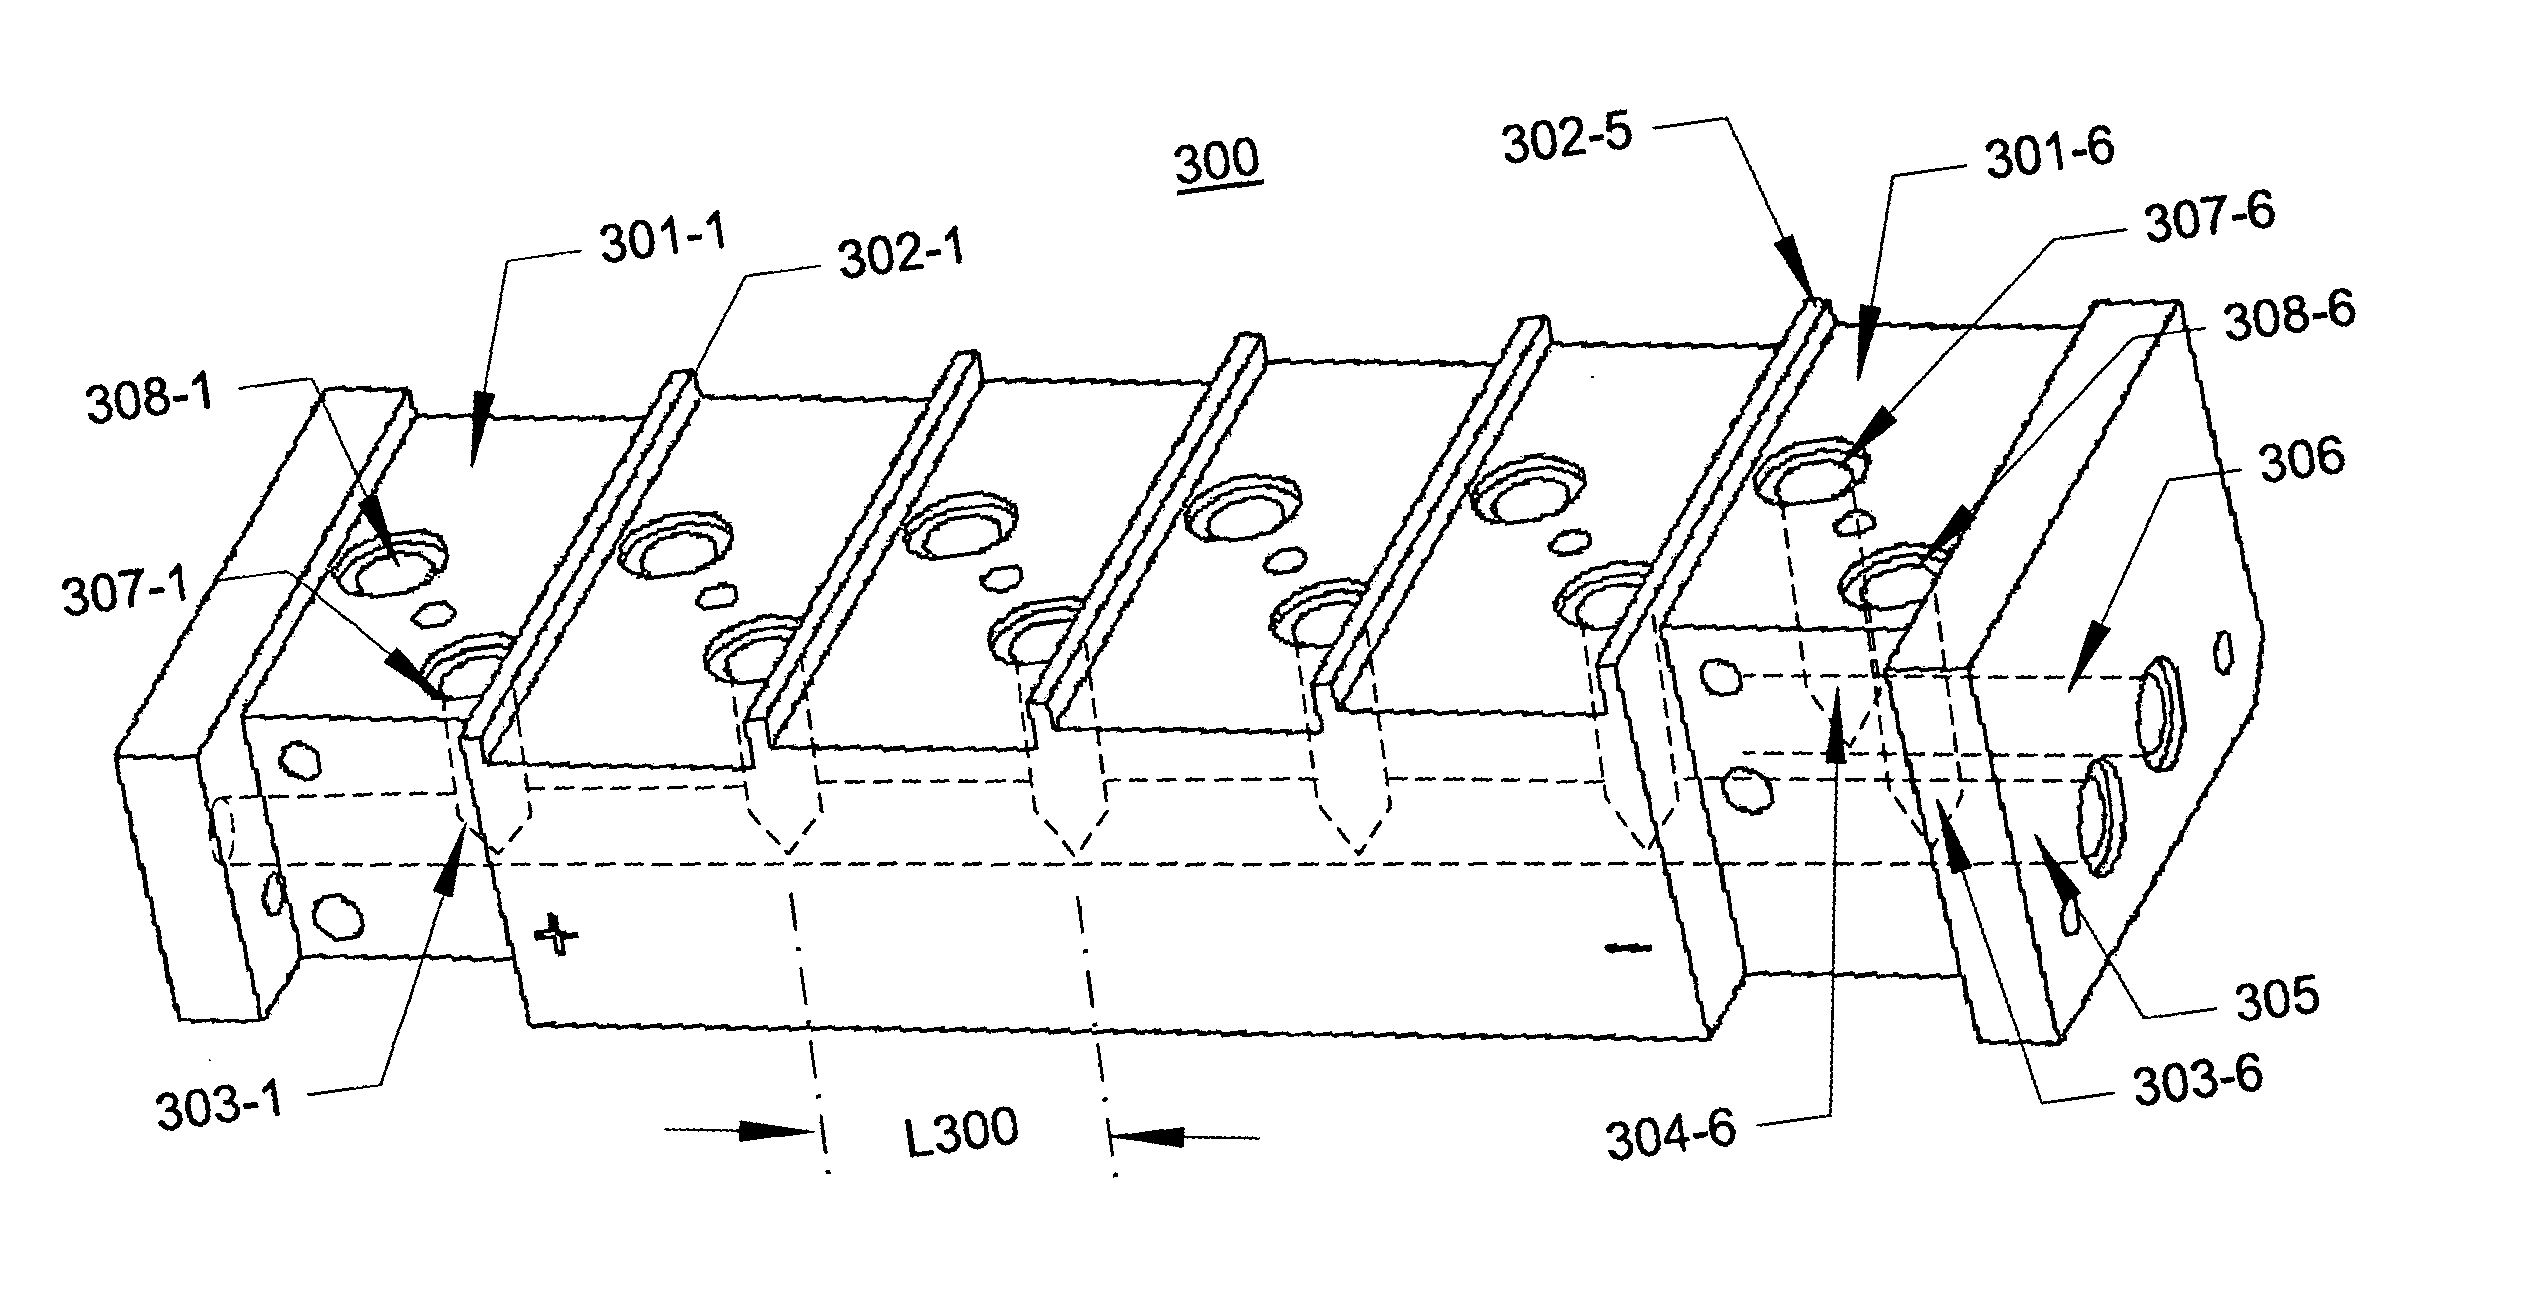 Stepped manifold array of microchannel heat sinks